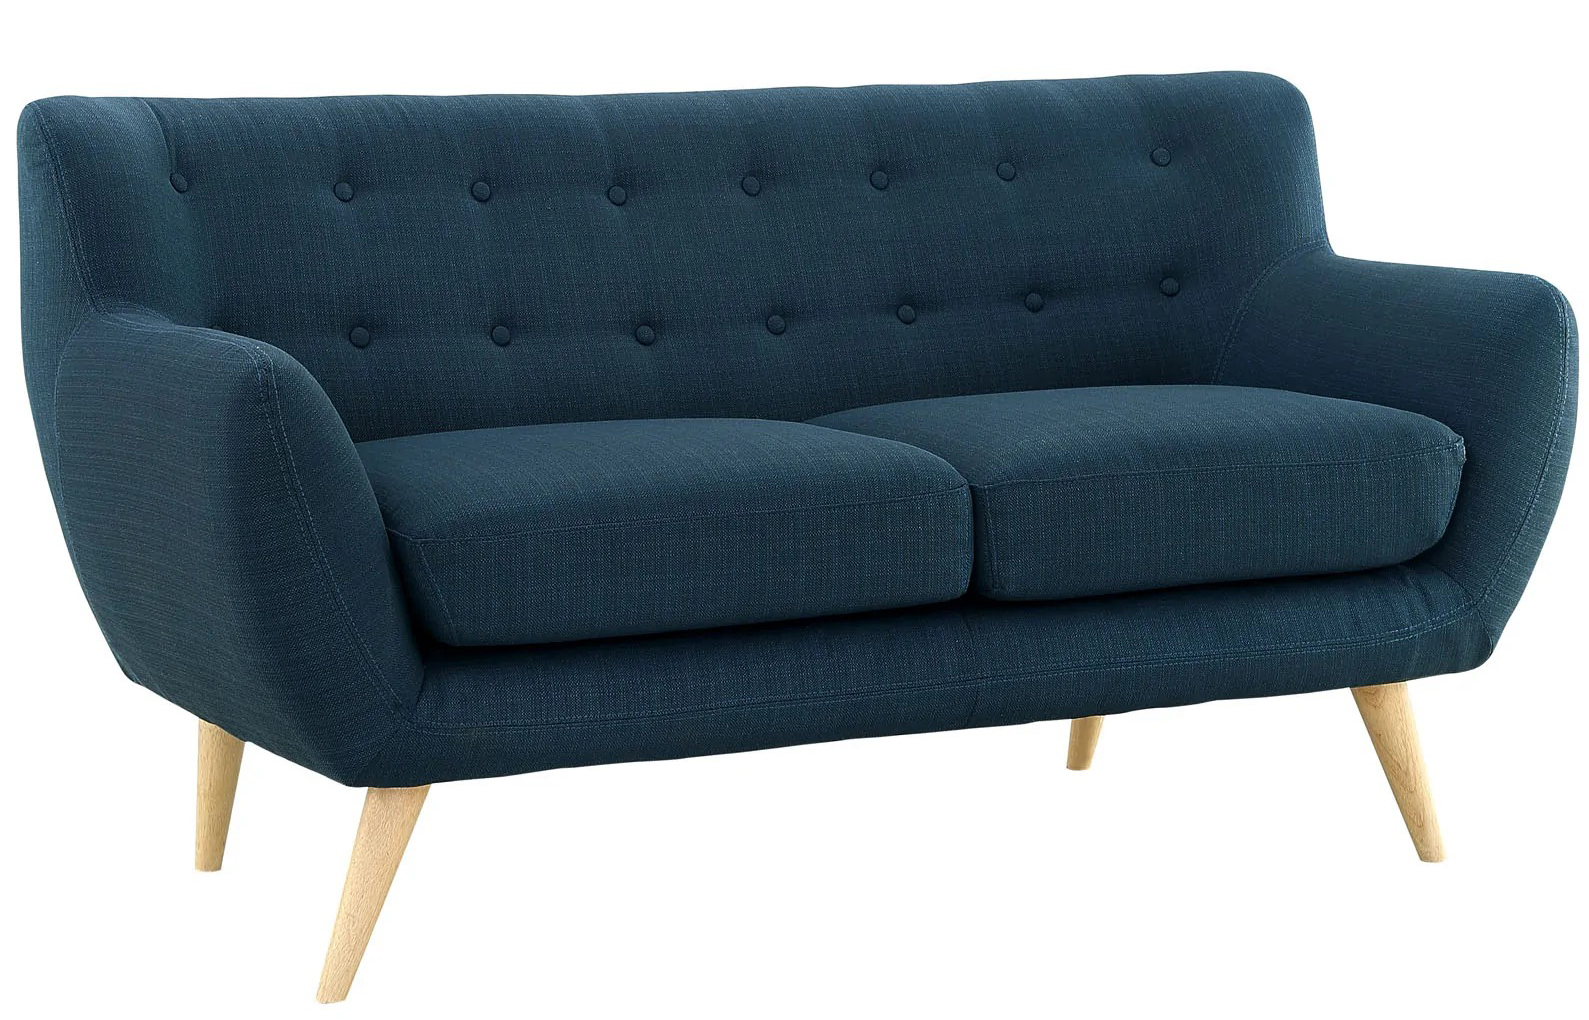 Sofa văng 2 chỗ cơ bản 16 chấm màu xanh than